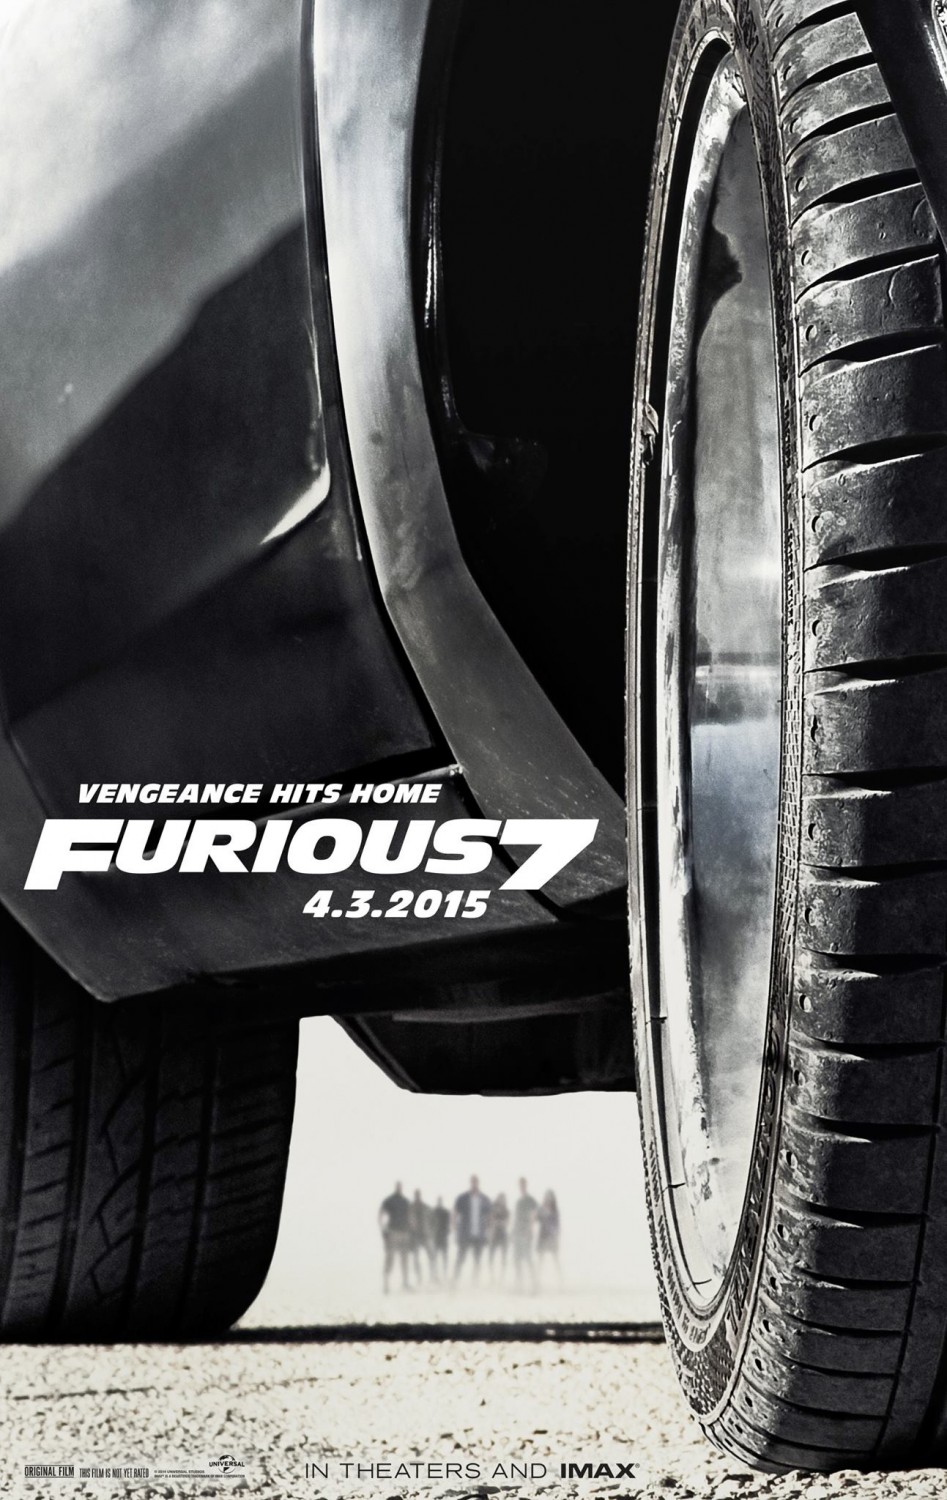 Fast-&-Furious-7-PROMO-POSTER-XXLG-03NOVEMBRO2014